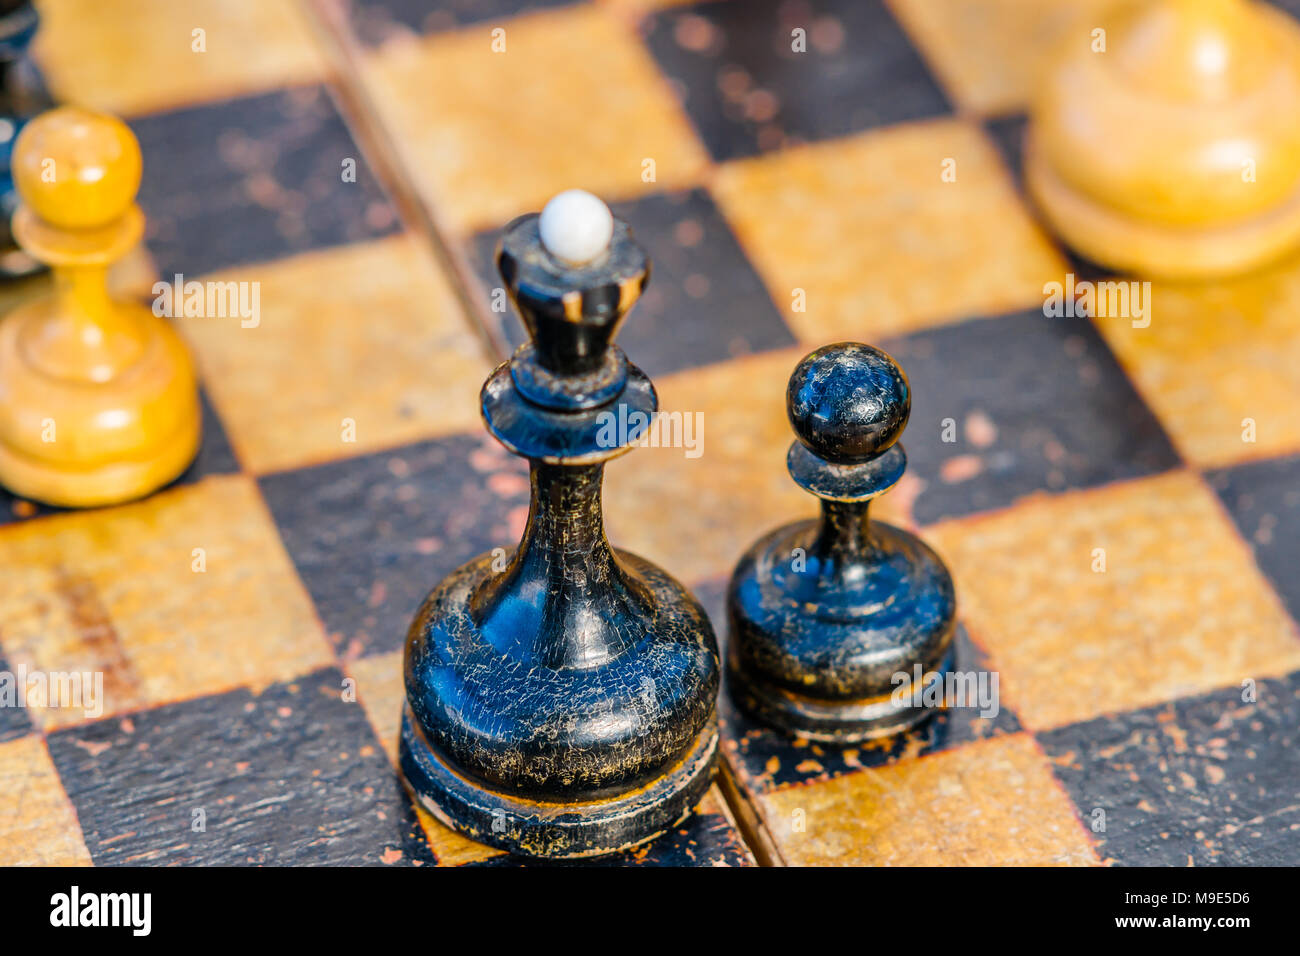 Viejo y usado, soportó la Reina negra de ajedrez y un peón en un tablero de  ajedrez. Se centran en un peón, Peón blanco de ajedrez es visible  Fotografía de stock -